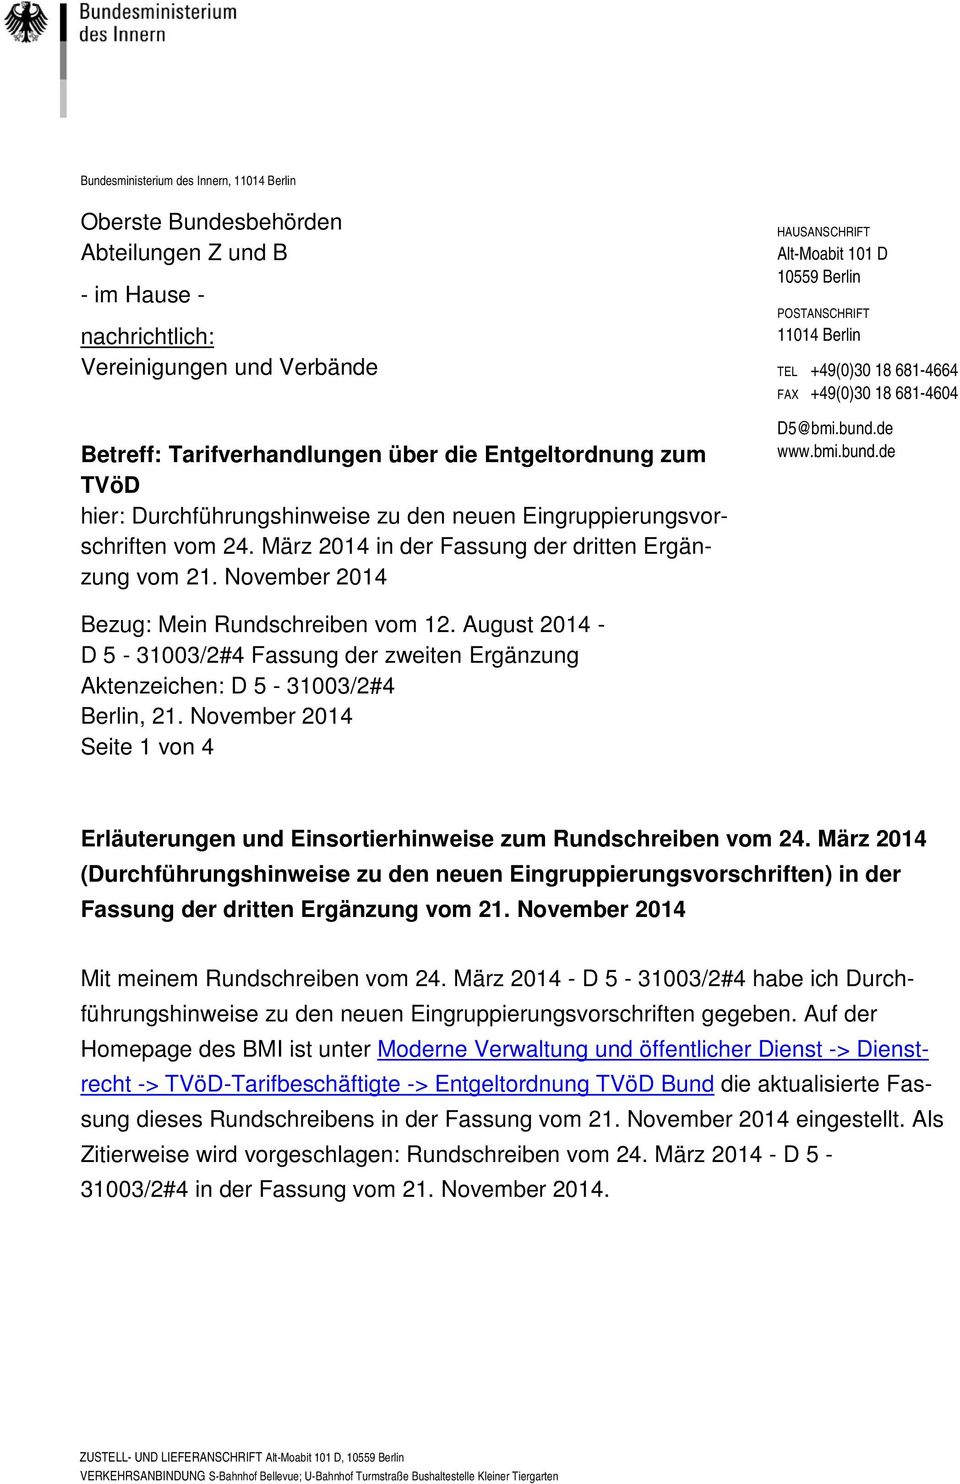 November 2014 HAUSANSCHRIFT Alt-Moabit 101 D 10559 Berlin POSTANSCHRIFT 11014 Berlin TEL +49(0)30 18 681-4664 FAX +49(0)30 18 681-4604 D5@bmi.bund.de www.bmi.bund.de Bezug: Mein Rundschreiben vom 12.